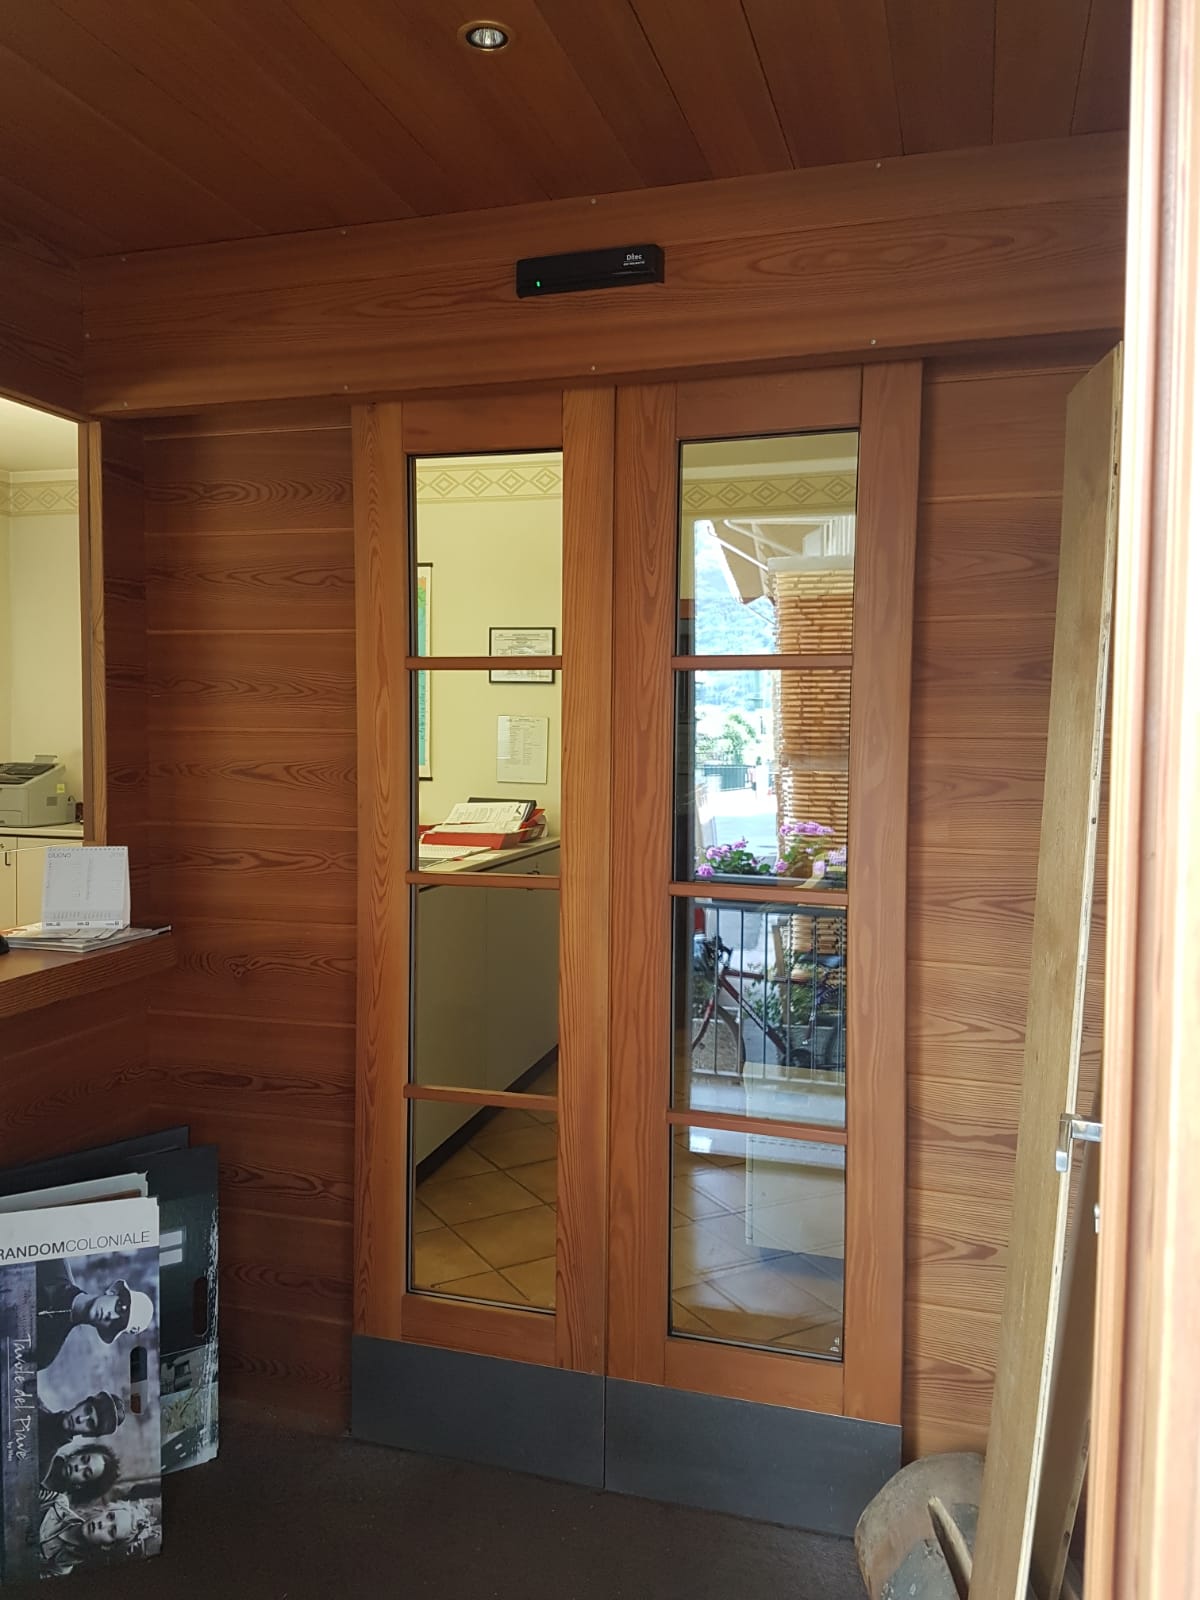 Nuova porta automatica presso azienda di Tirano: Immagine 1